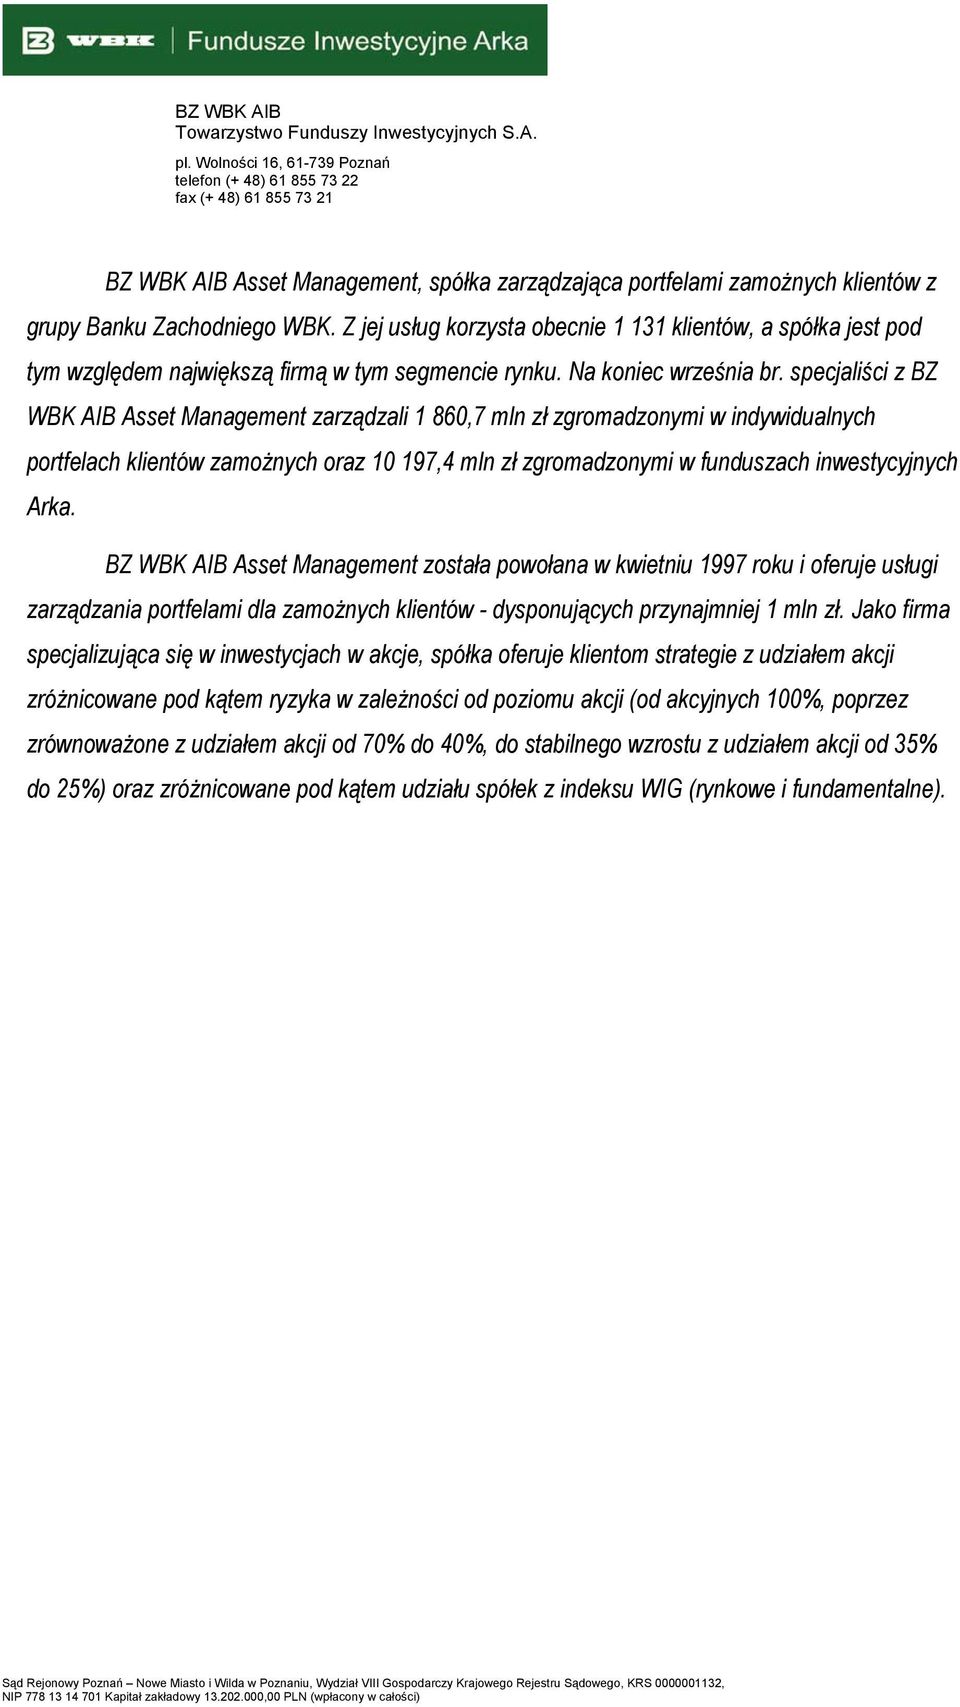 specjaliści z BZ WBK AIB Asset Management zarządzali 1 860,7 mln zł zgromadzonymi w indywidualnych portfelach klientów zamożnych oraz 10 197,4 mln zł zgromadzonymi w funduszach inwestycyjnych Arka.